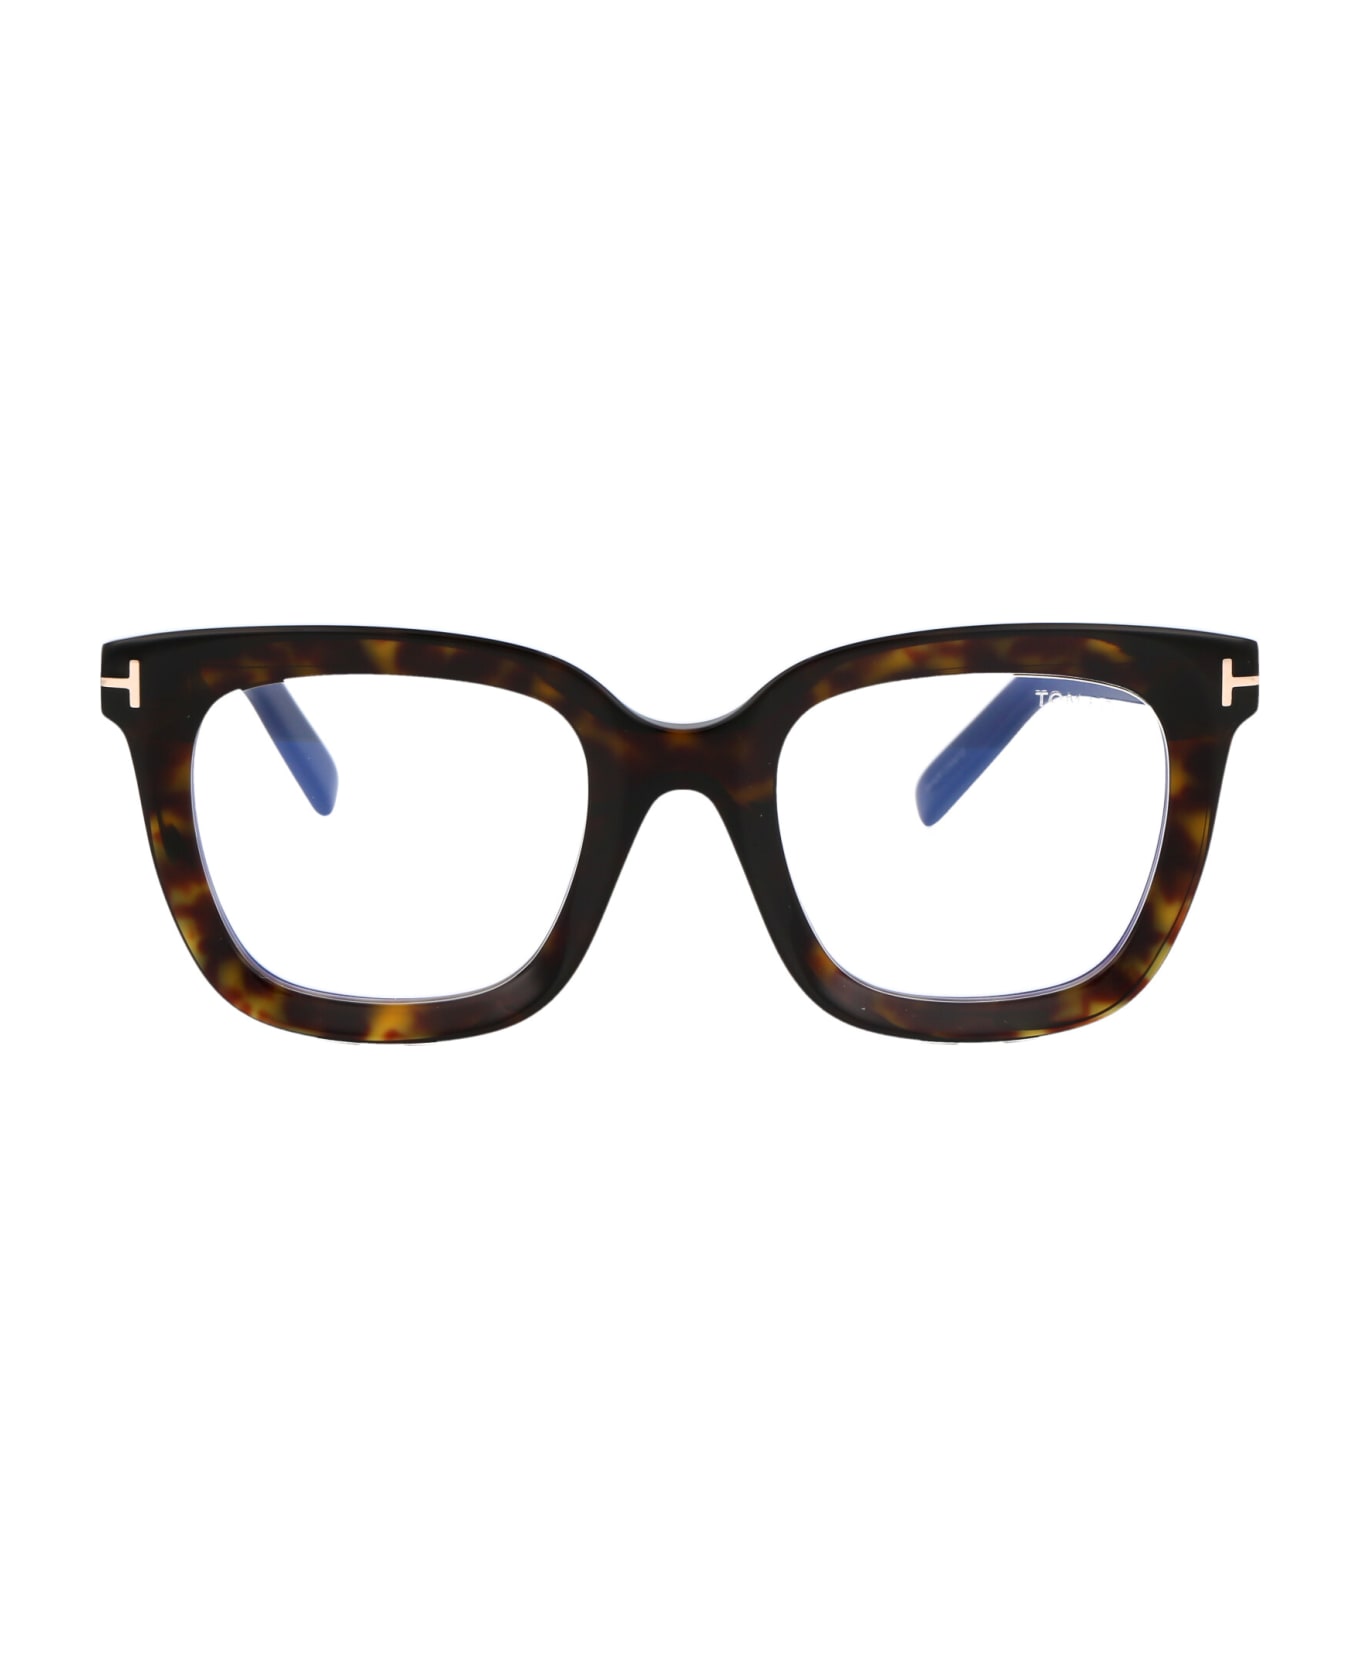 Tom Ford Eyewear Ft5880-b Glasses - 052 Avana Scura